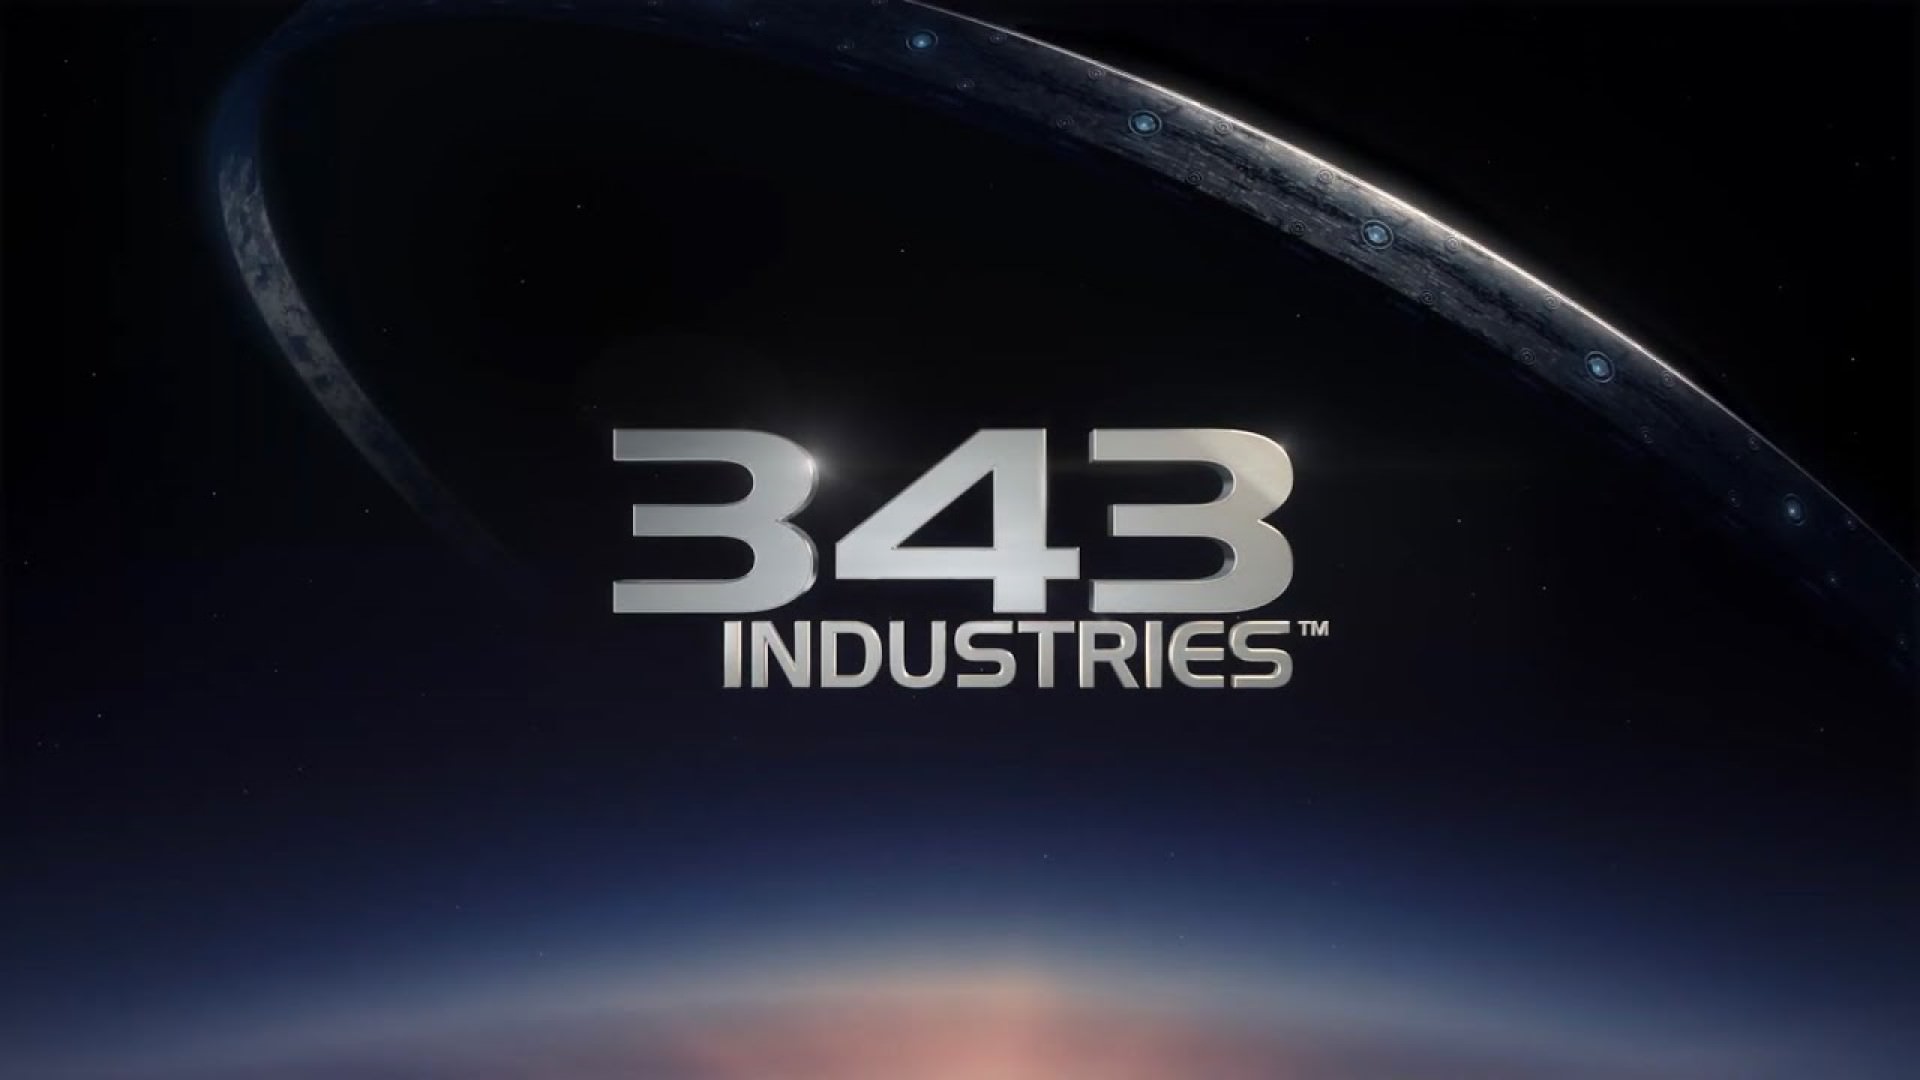 لوگوی استودیو 343 Industries سازنده سری بازی Halo